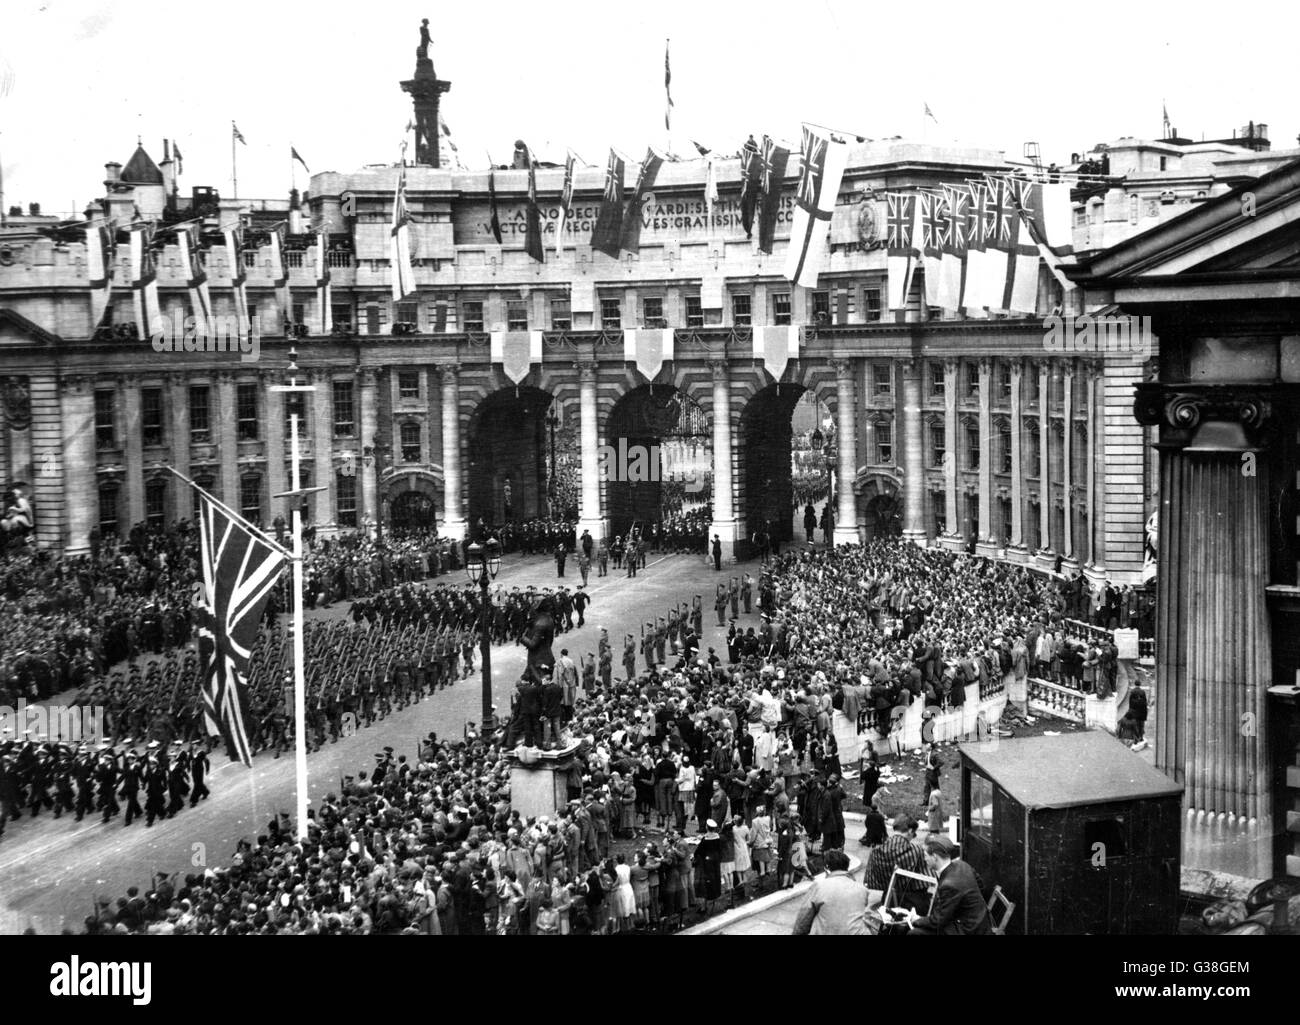 Die Siegesparade: das australische Kontingent geht entlang der Mall von Admiralty Arch.      Datum: 8. Juni 1946 Stockfoto